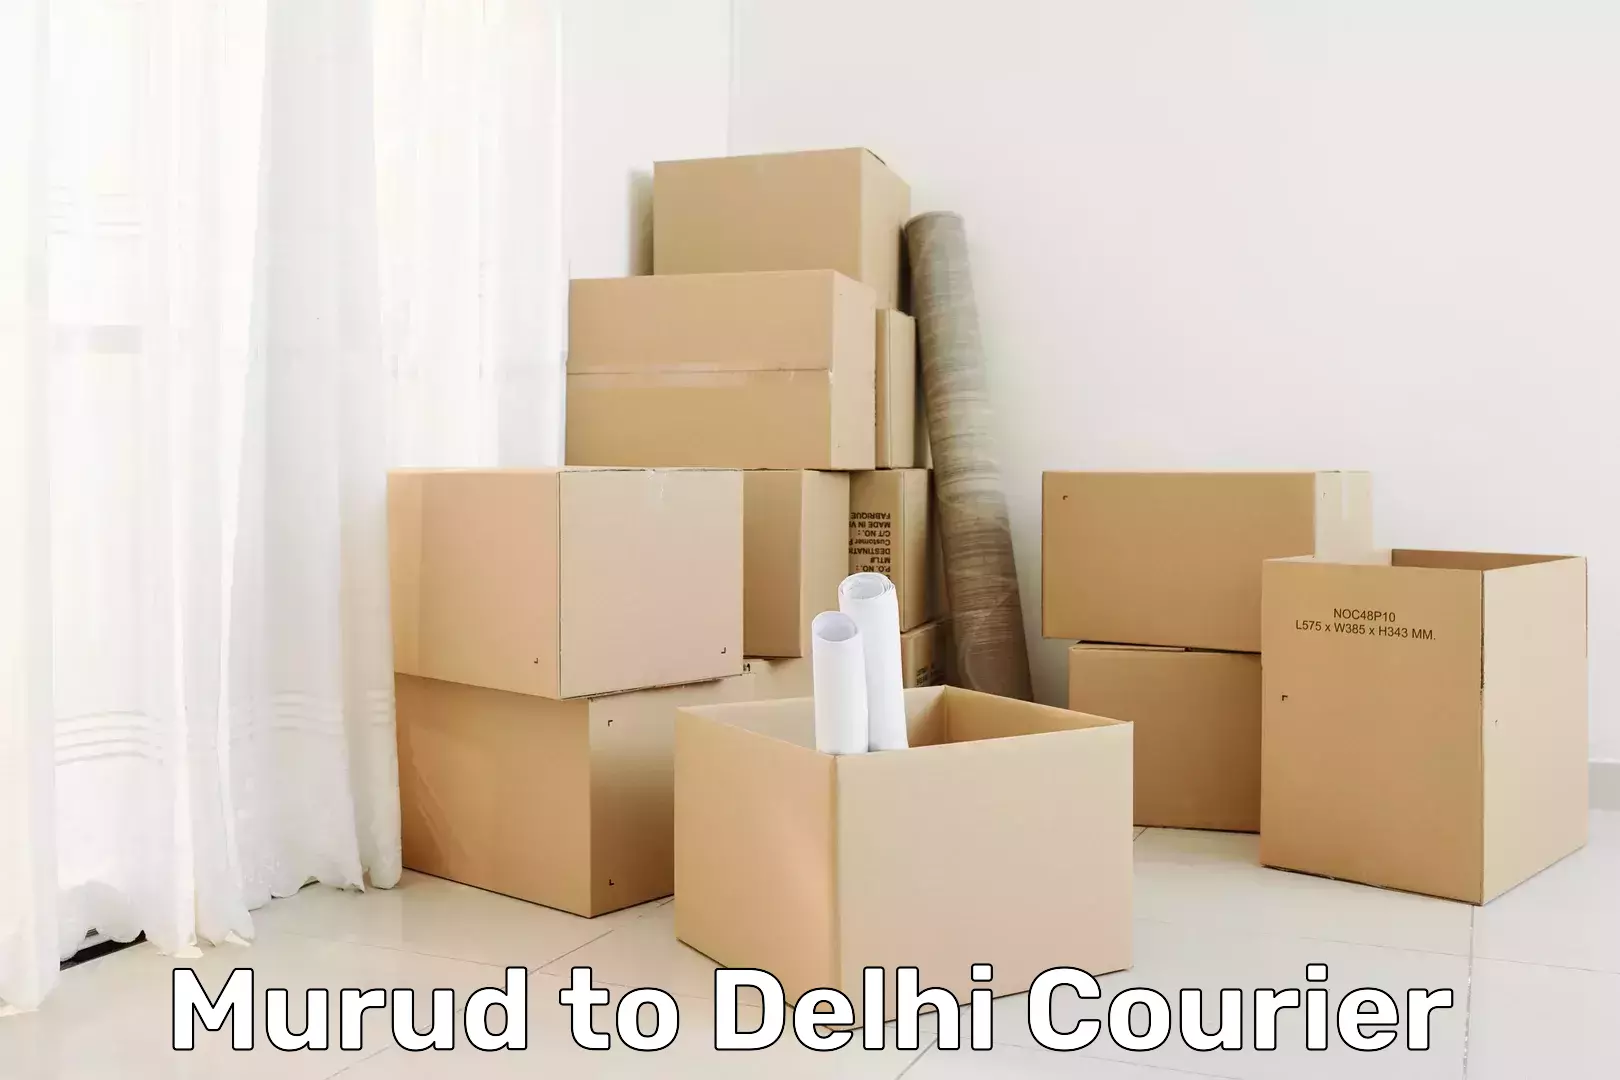 Fast delivery service in Murud to Delhi